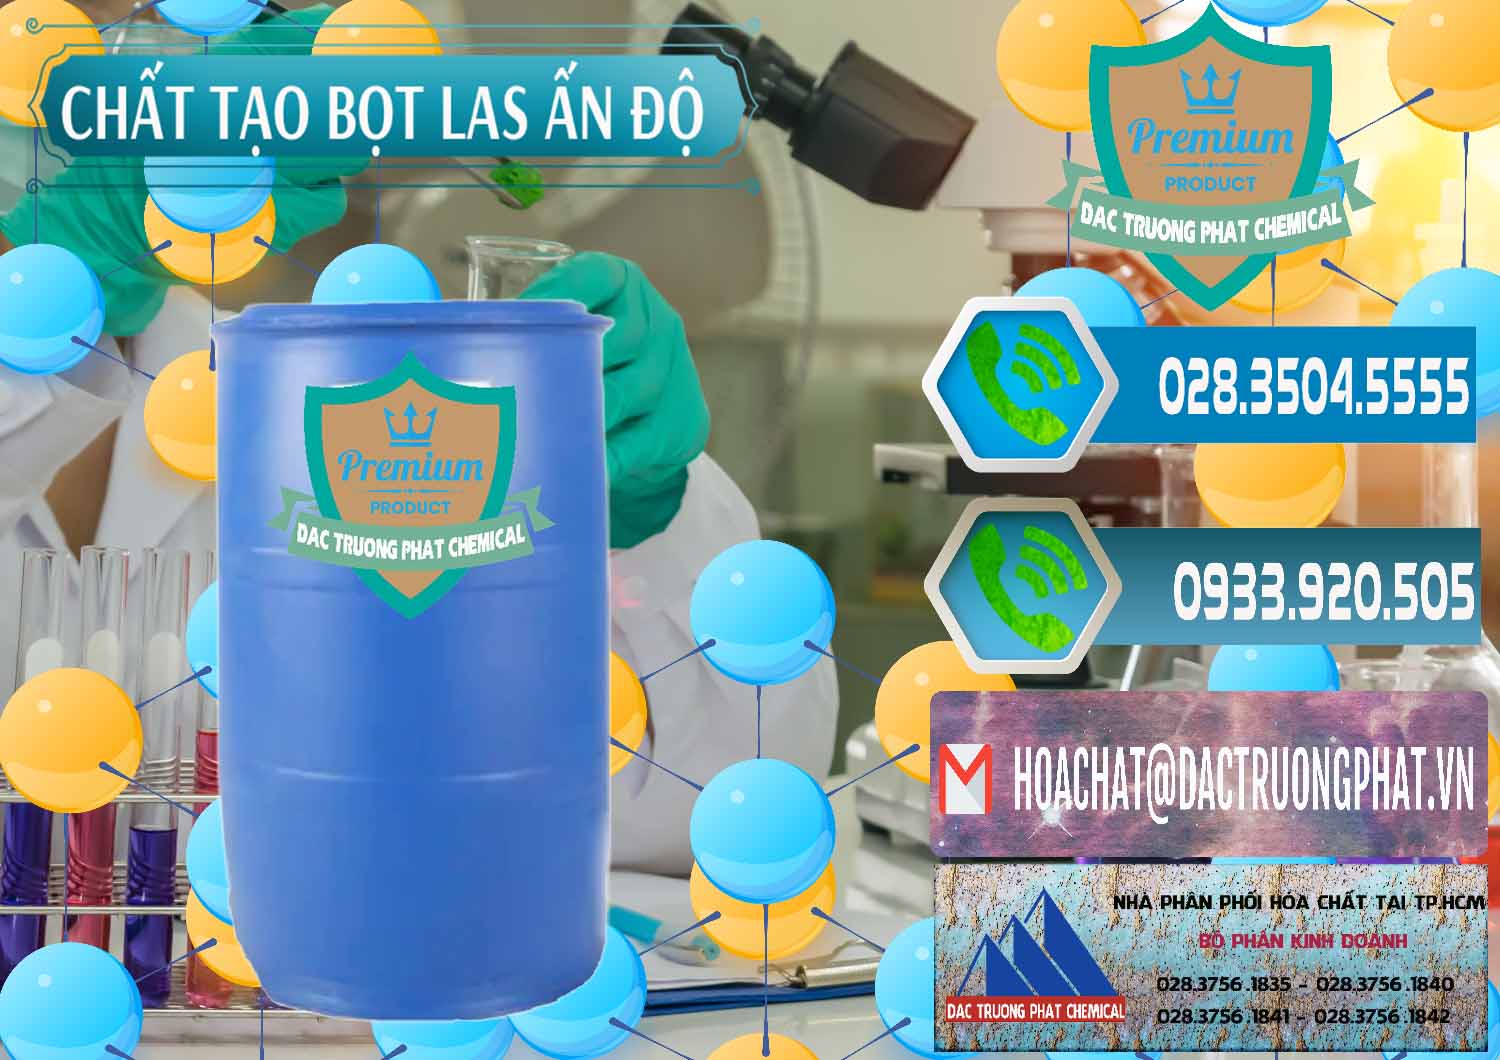 Công ty chuyên kinh doanh và bán Chất tạo bọt Las Ấn Độ India - 0477 - Chuyên cung cấp & phân phối hóa chất tại TP.HCM - congtyhoachat.net